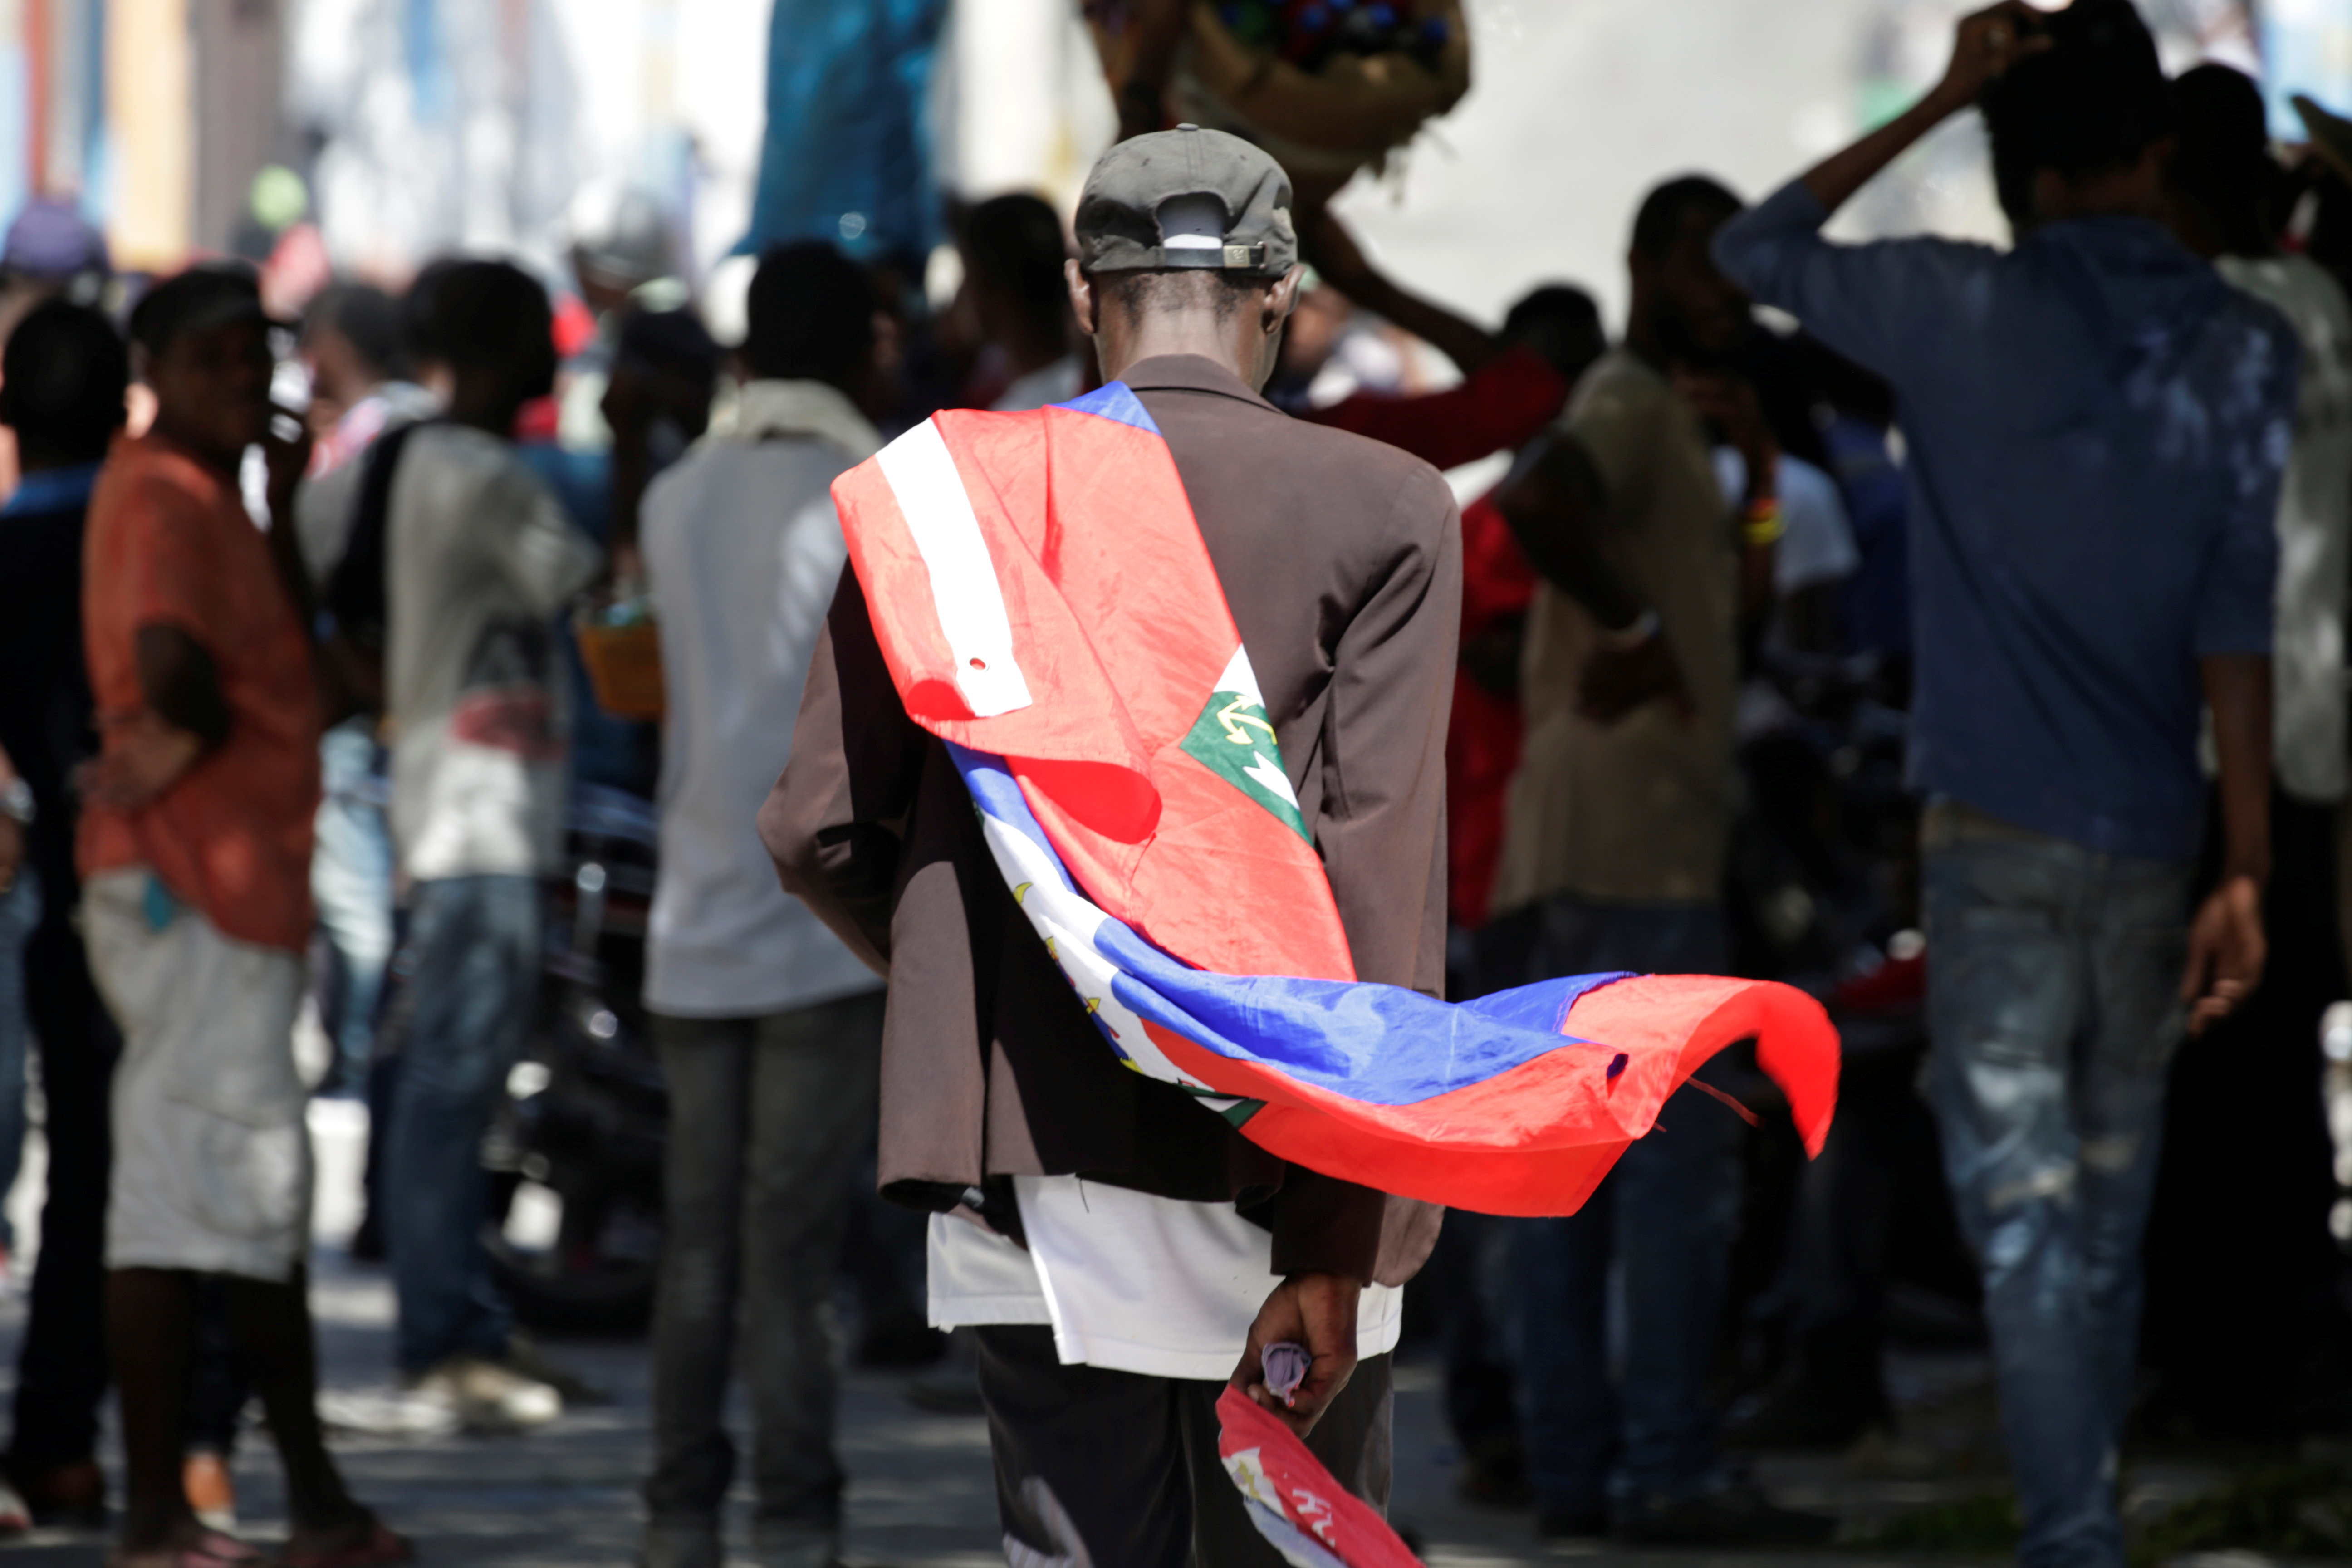 Jornada de protestas antigubernamentales en Haití deja dos muertos (Fotos)